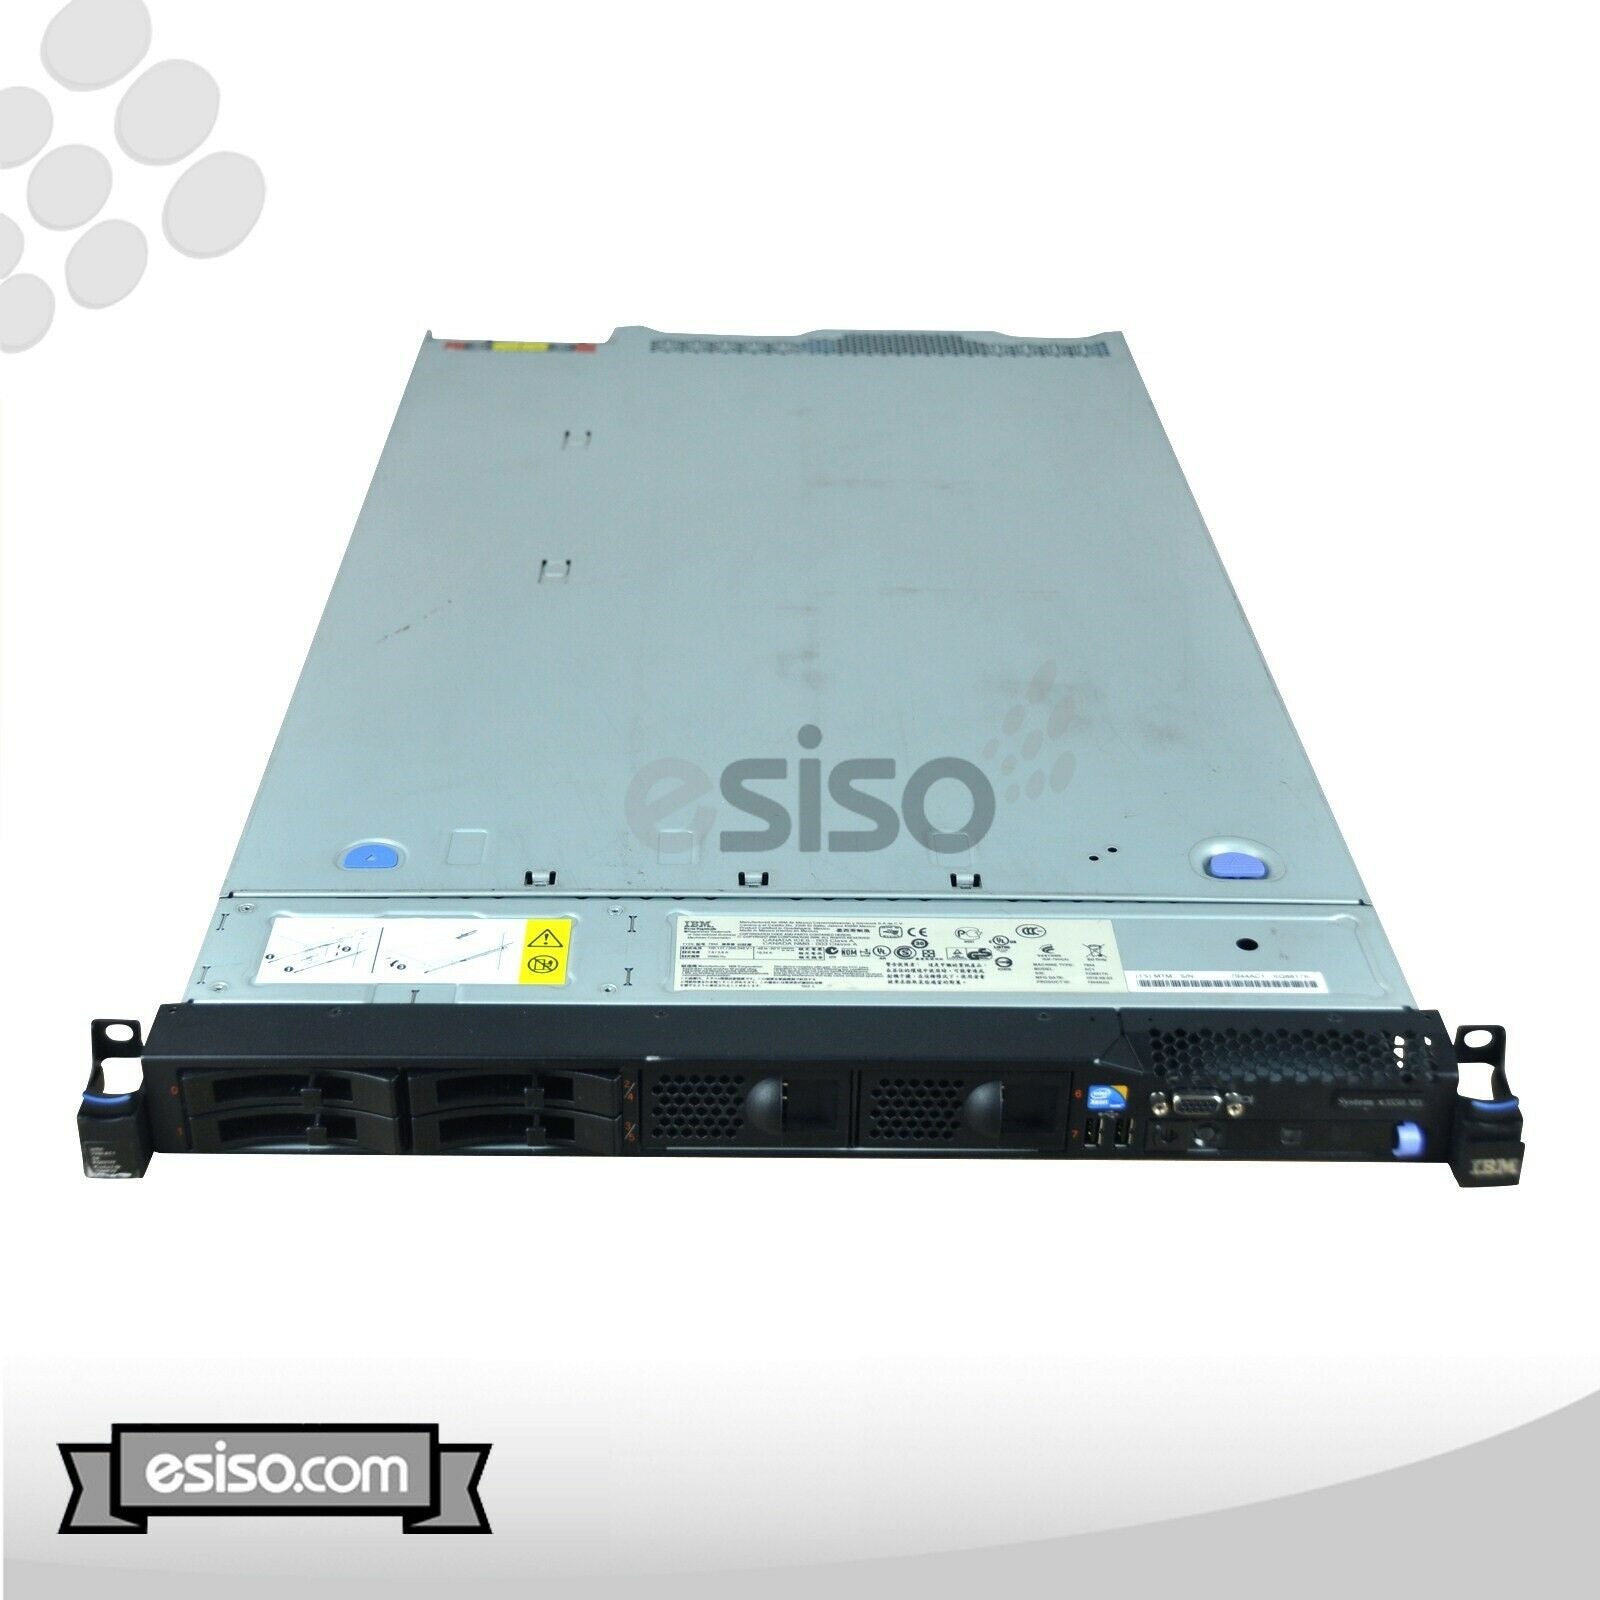 IBM System x3550 M3 7944-AC1 2x SIX CORE L5640 2.26GHz 48GB RAM 4x 160GB SSD